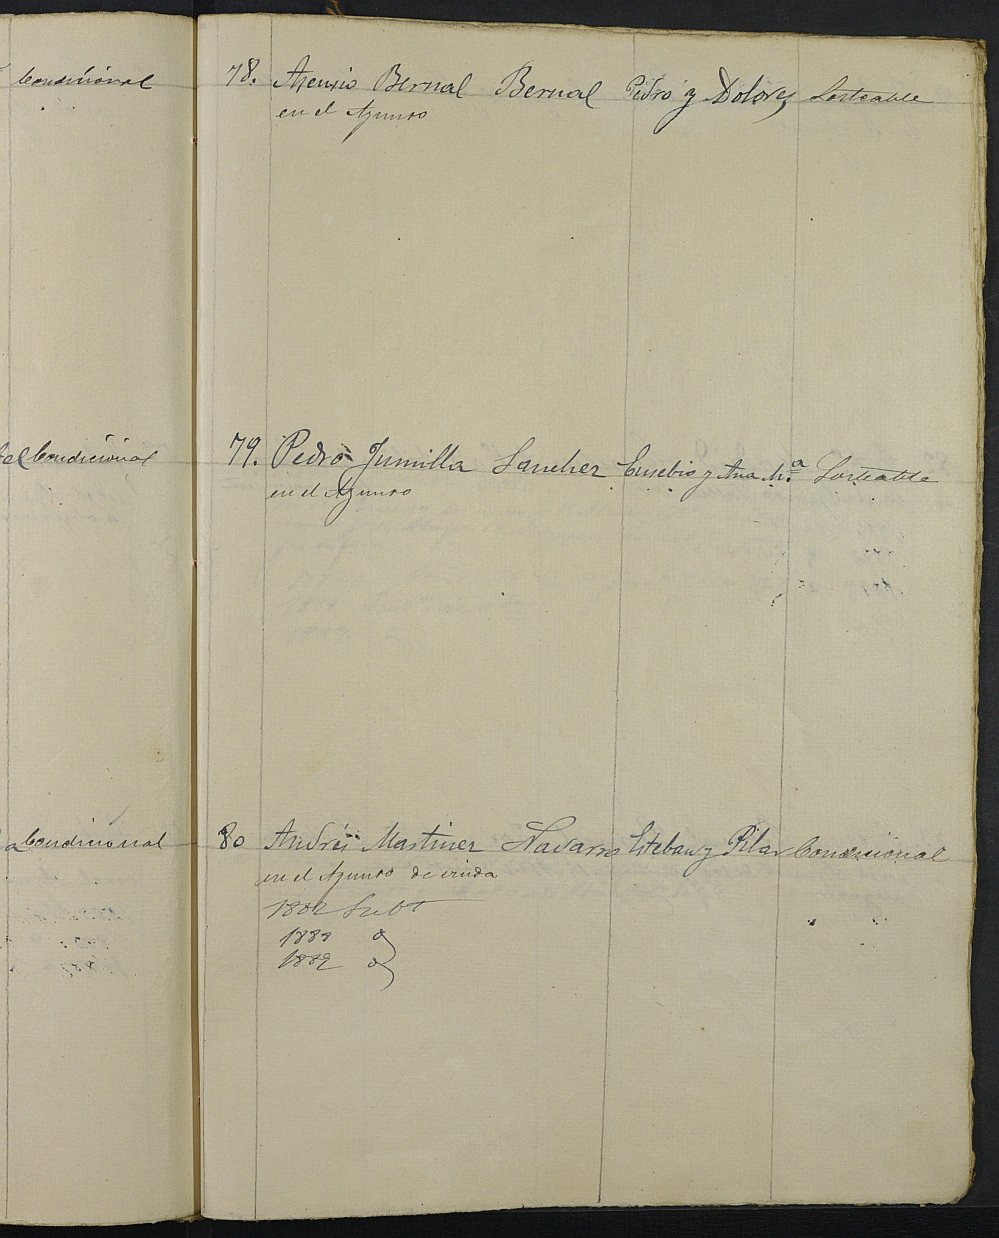 Relación de individuos declarados soldados e ingresados en Caja de la Sección 4ª del Ayuntamiento de Cartagena de 1886.